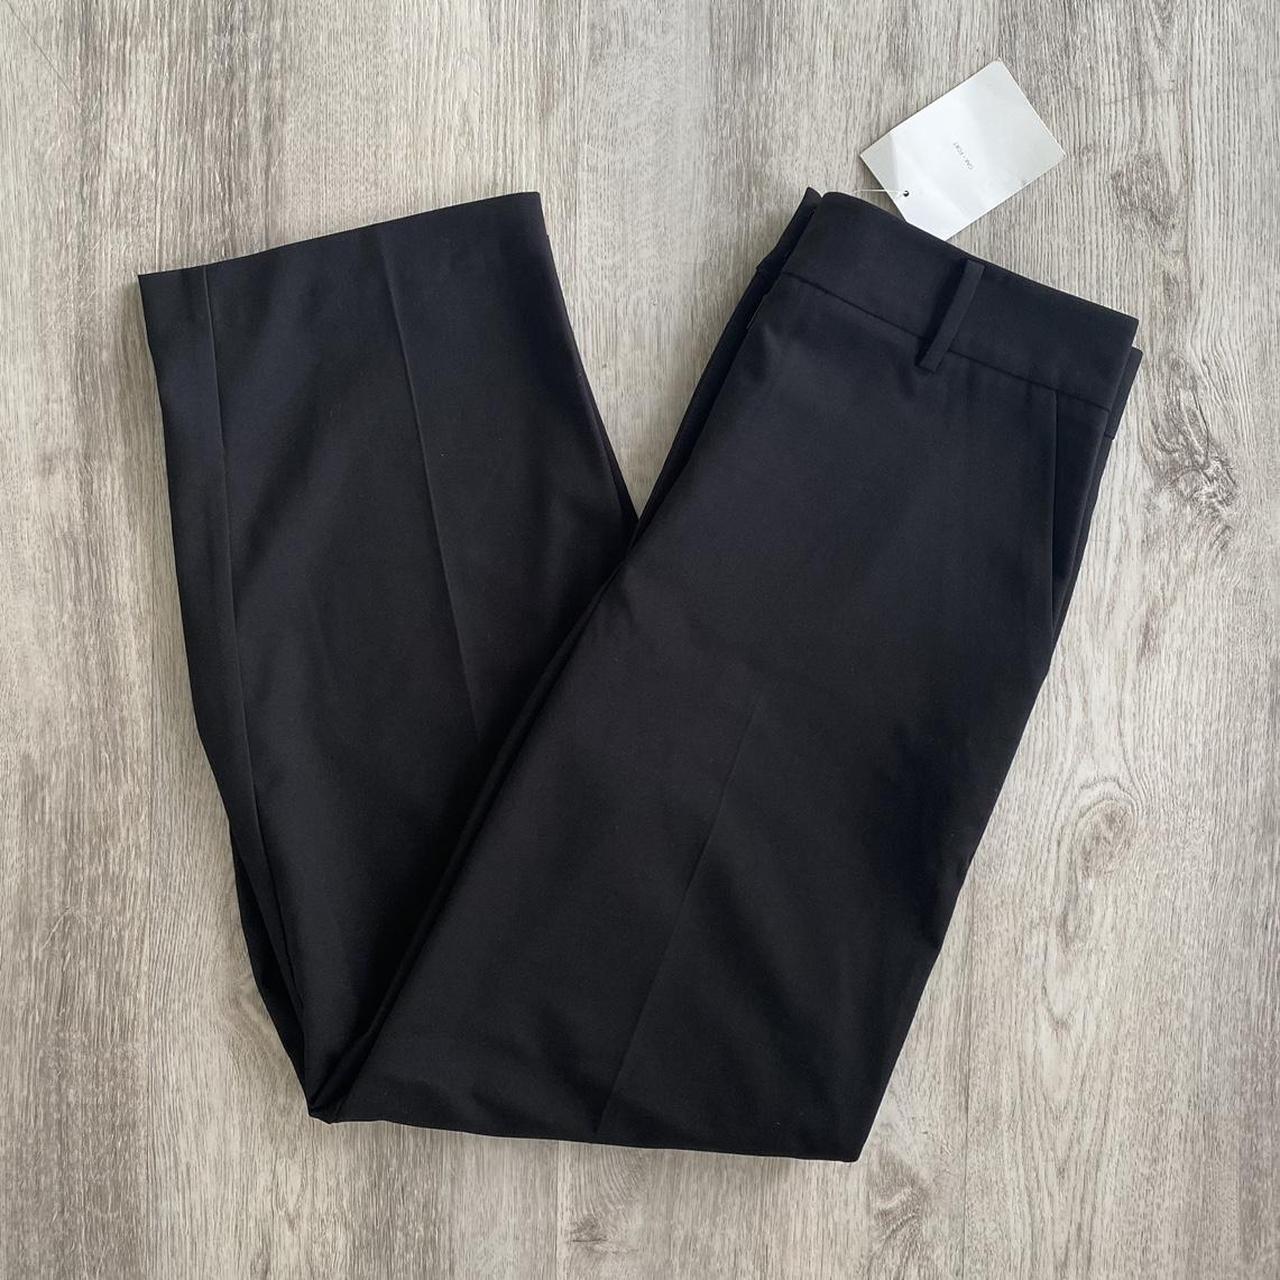 Women's Black Baggy Suit Pants Waist 27 Black Suit Trousers 27